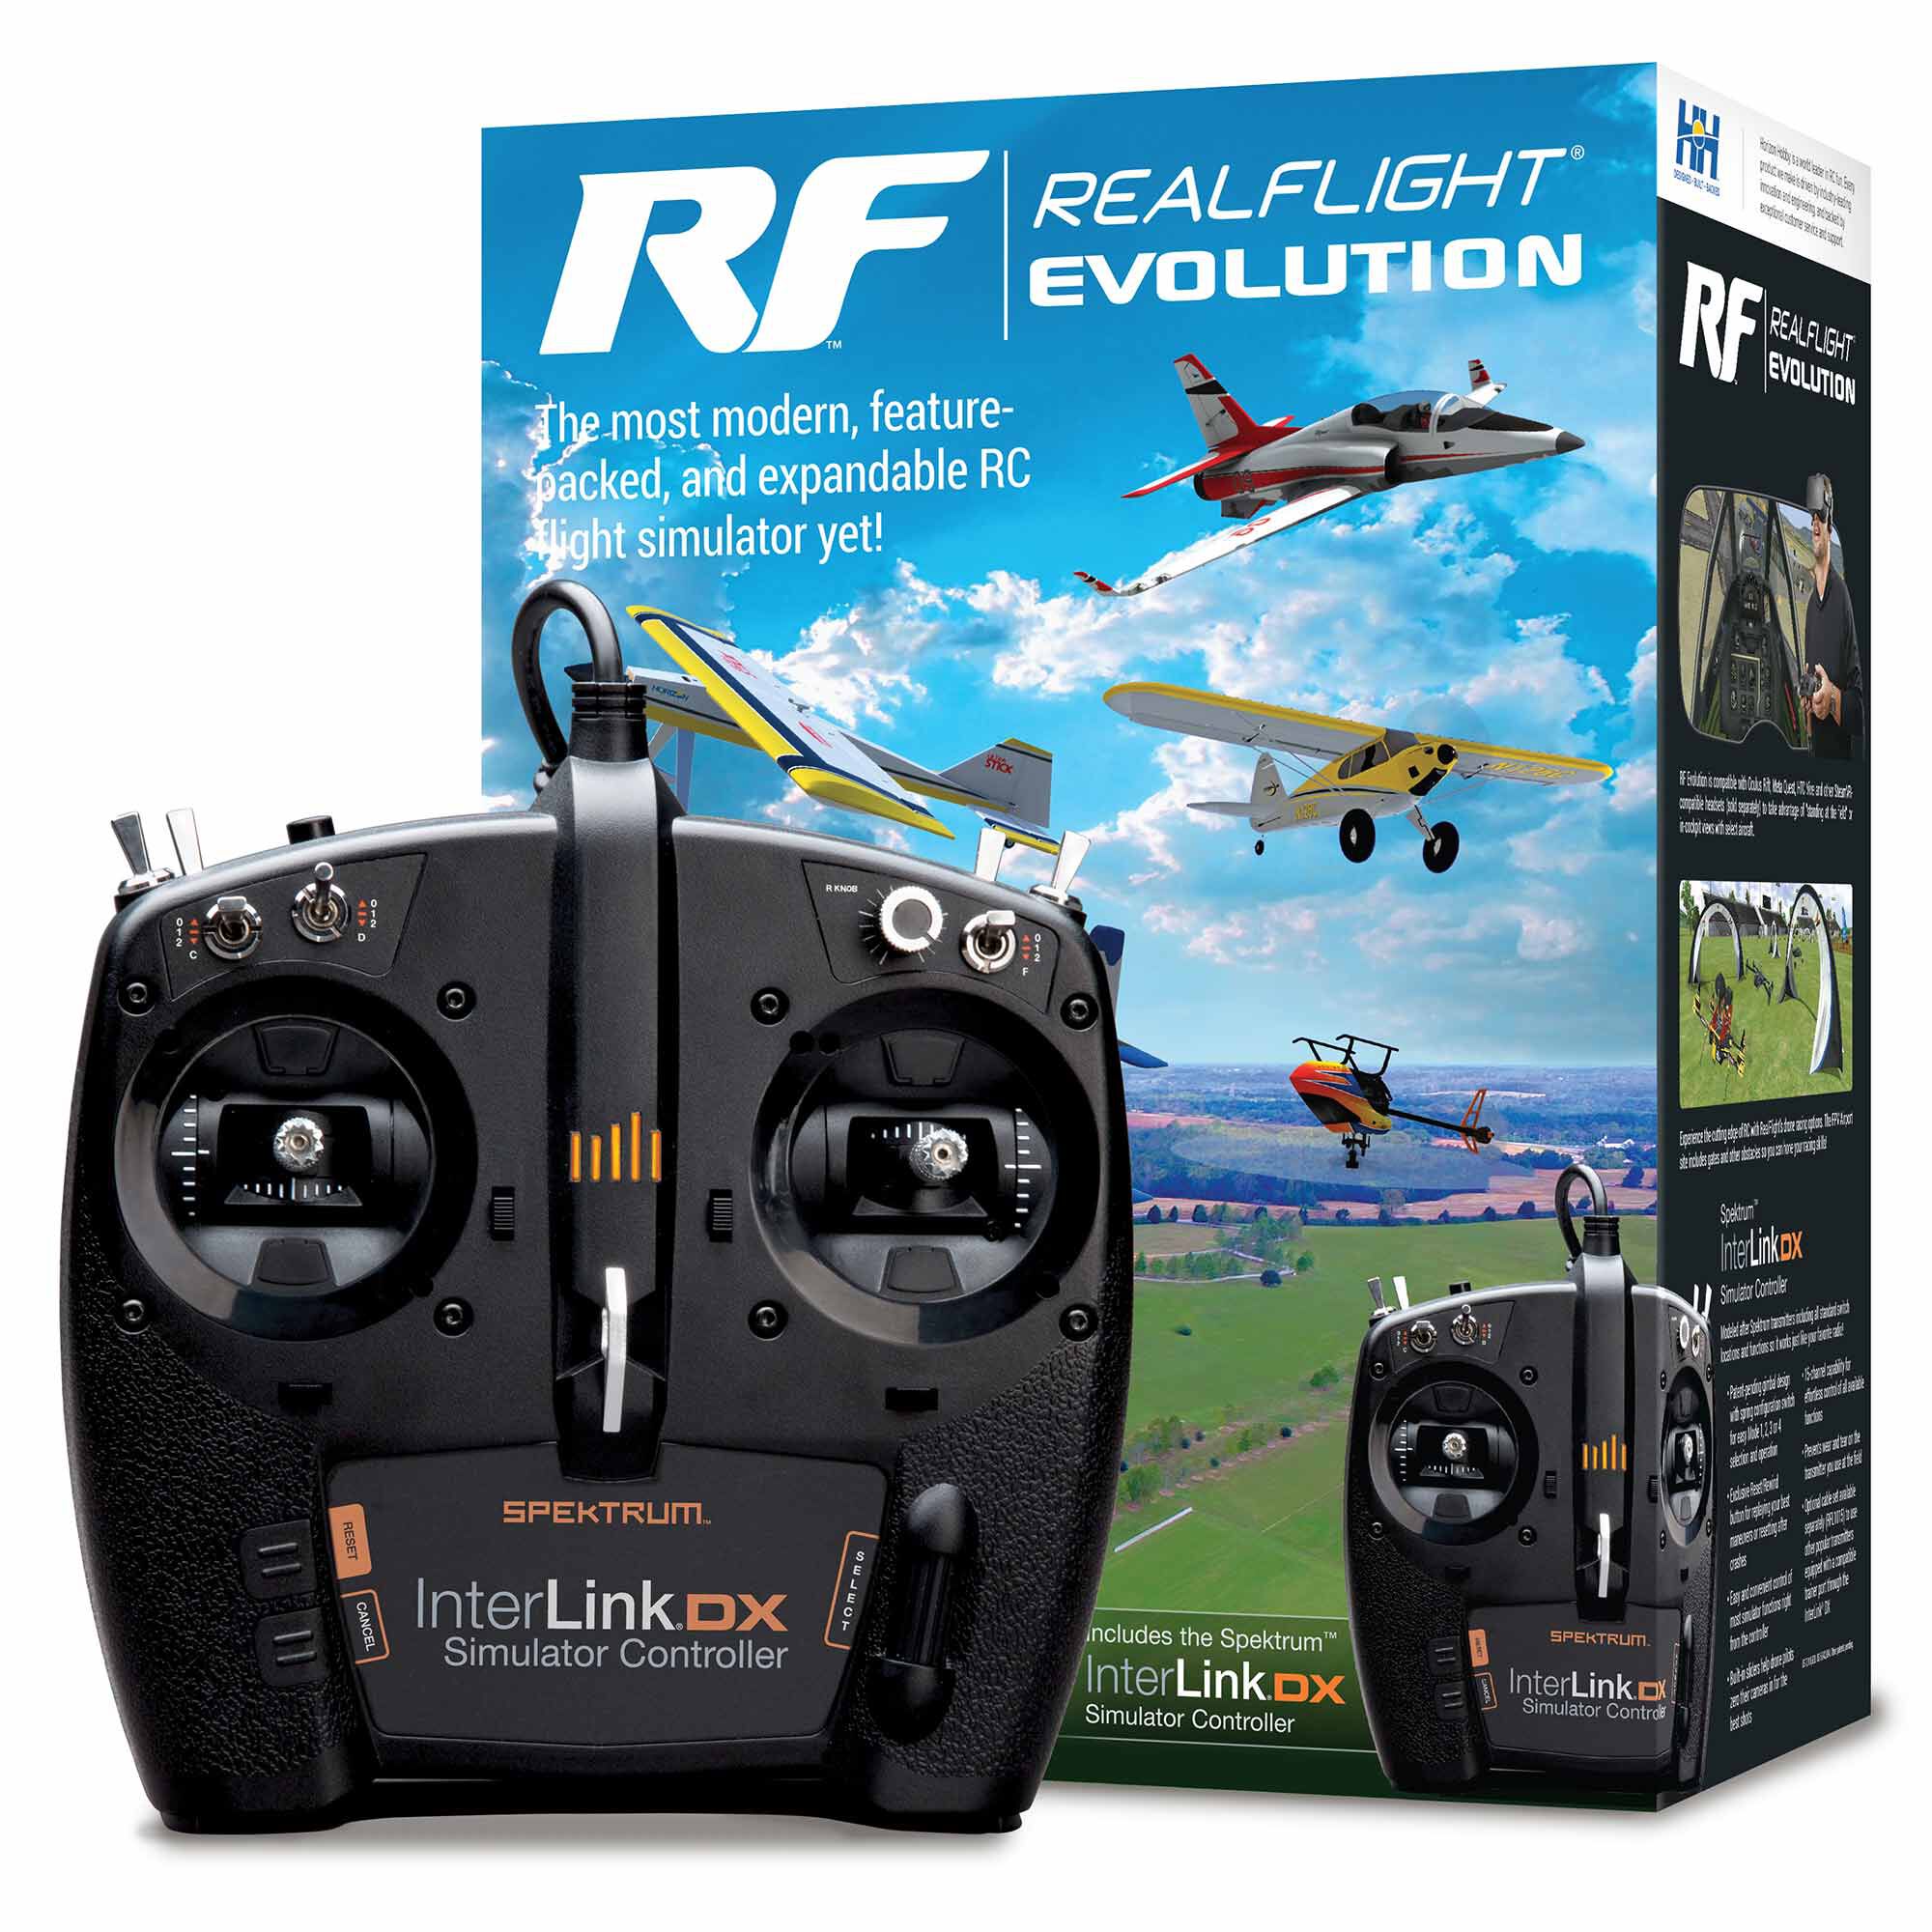 Realflight 8 リアルフライト8 ラジコンシミュレーター - ホビーラジコン